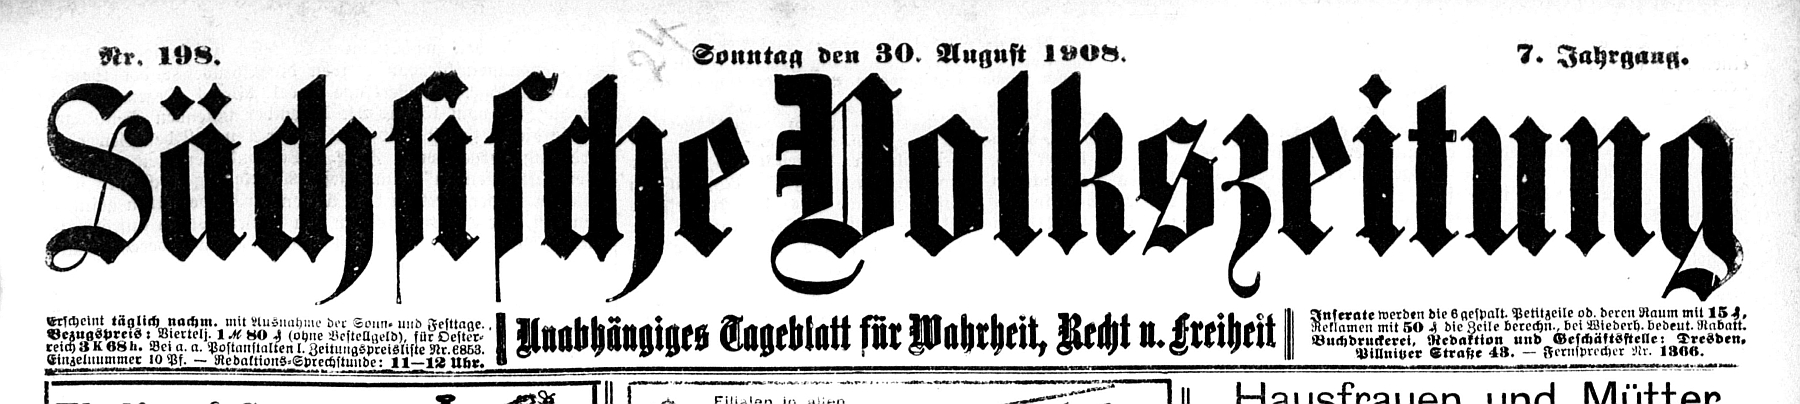 Sächsische Volkszeitung 1908